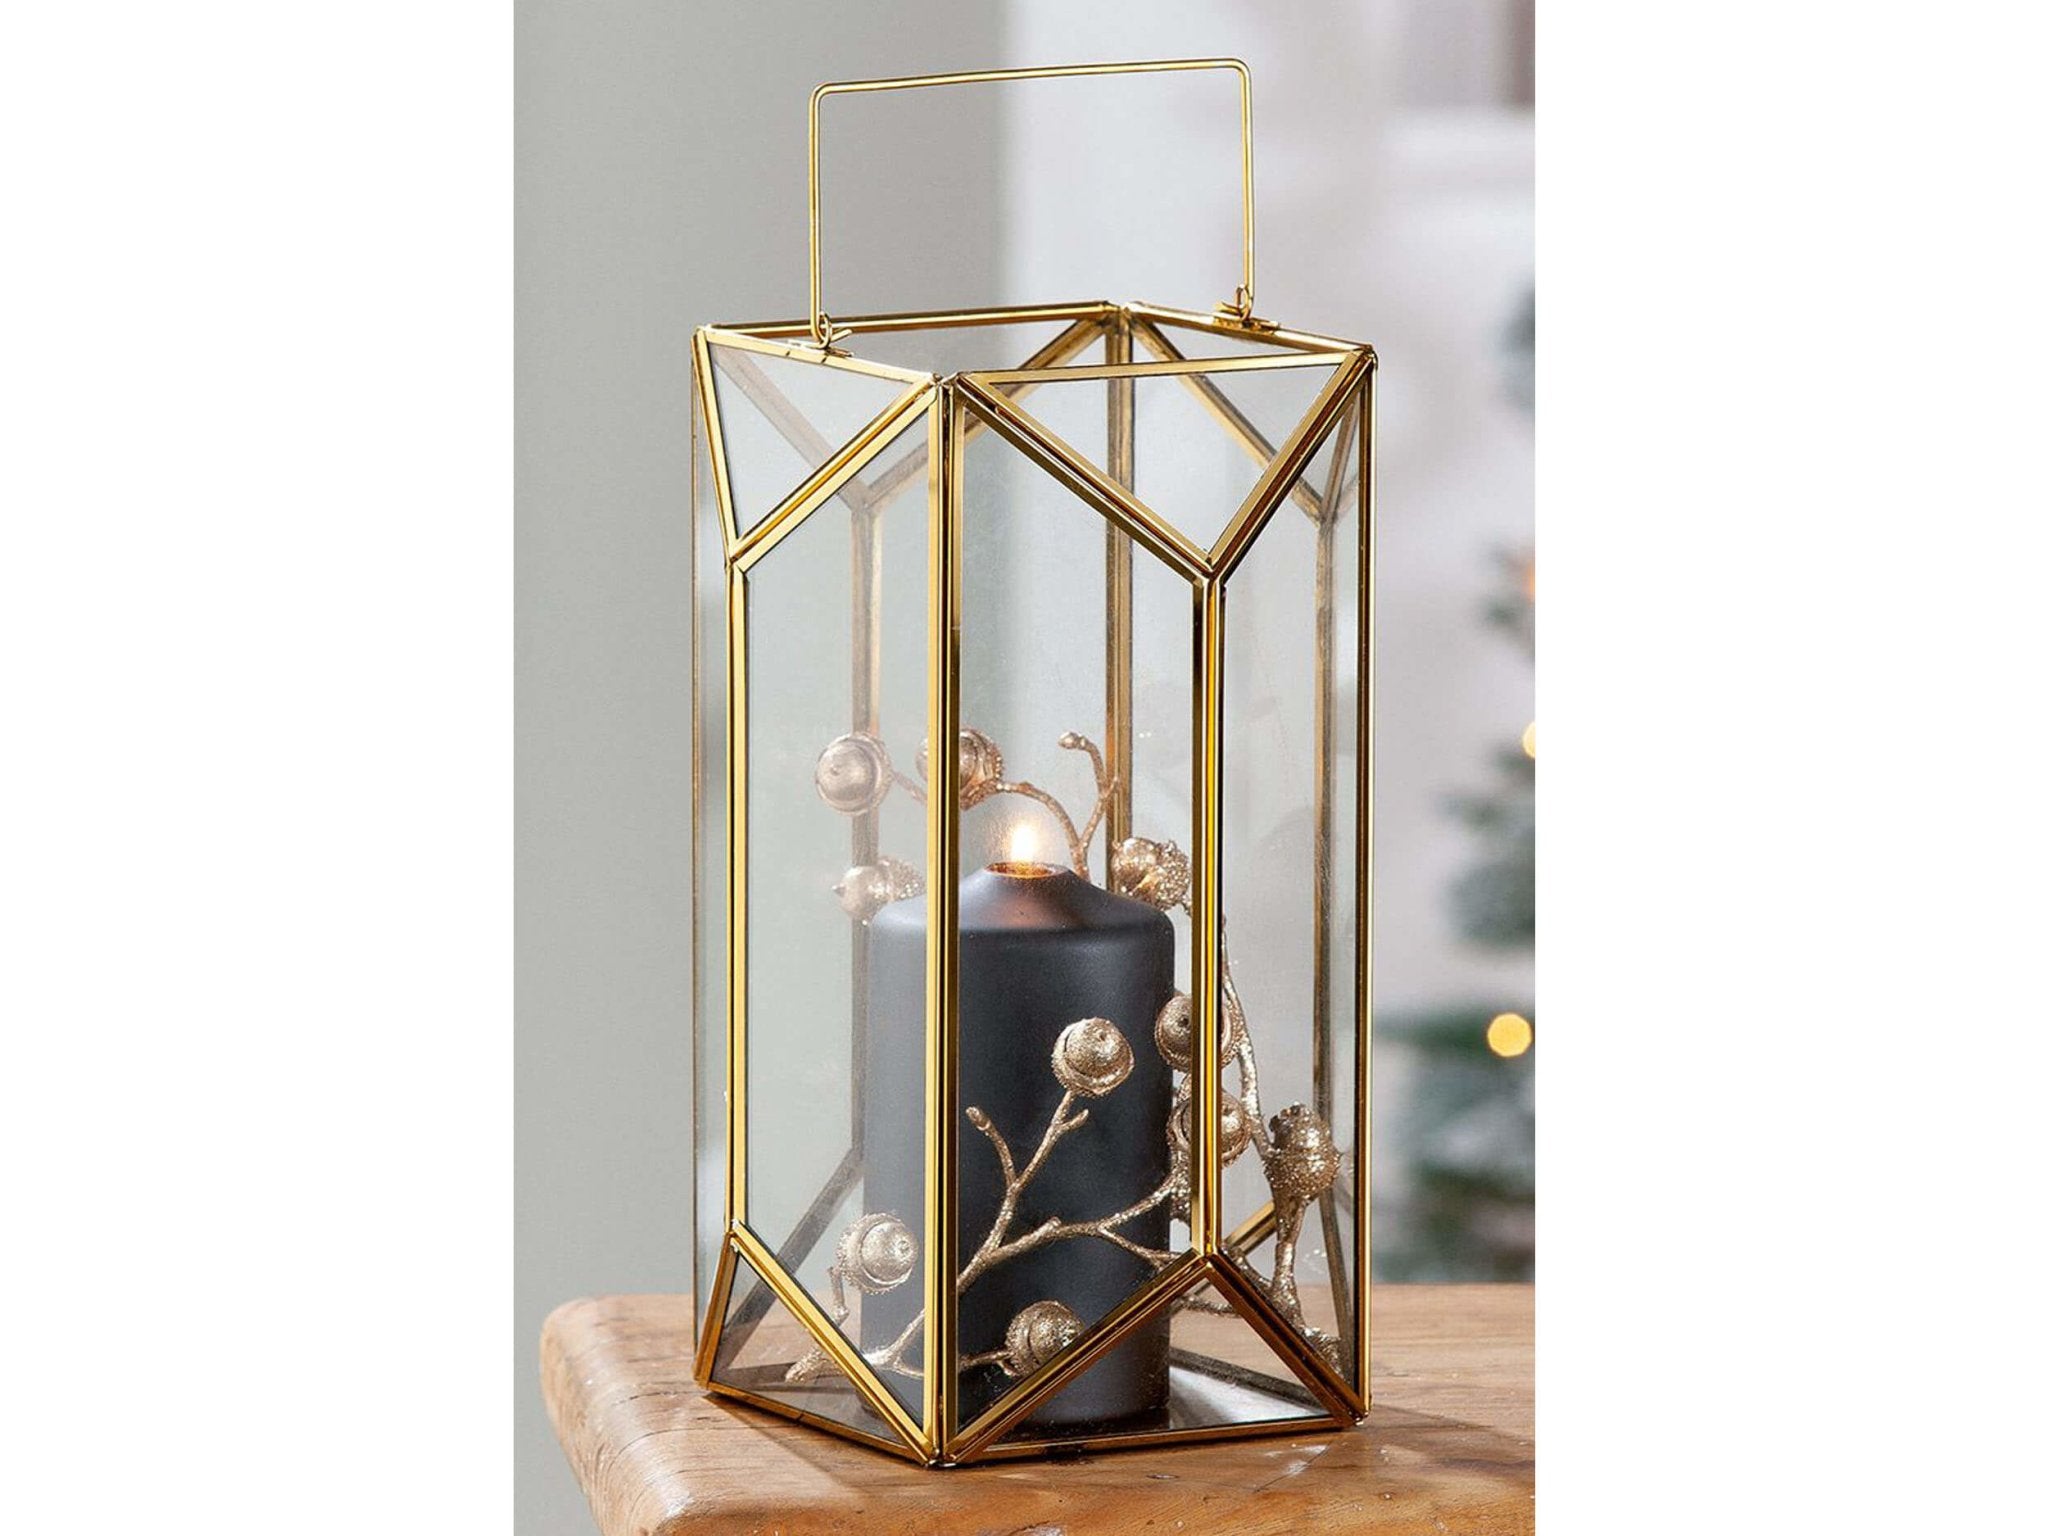 Klassieke stijl decoratieve lantaarn voor kaarsen | veelhoekige vorm | 18 cm diameter